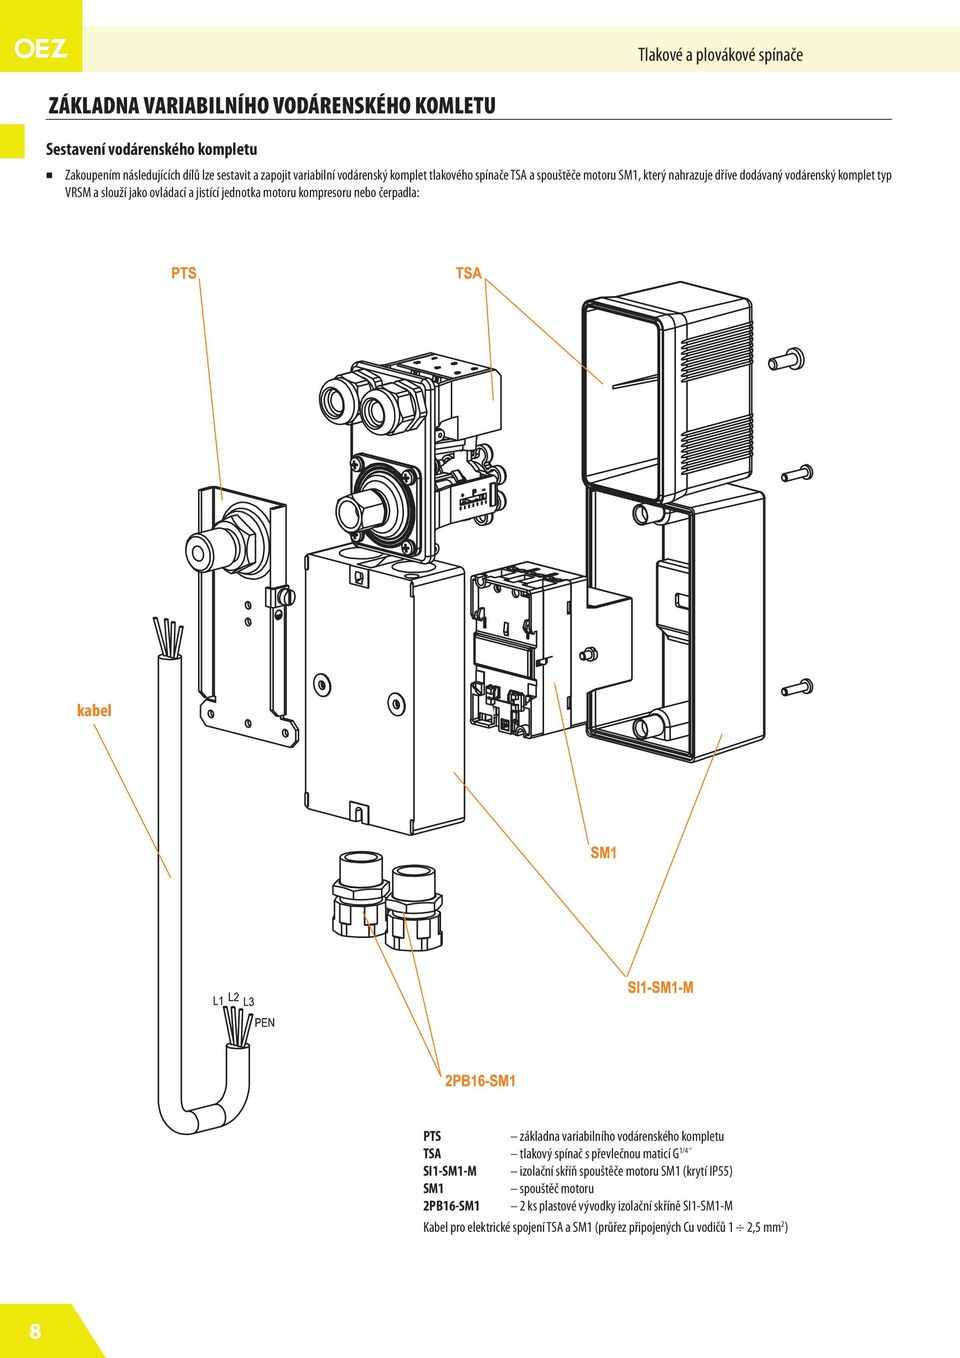 nebo čerpadla: kabel PTS základna variabilního vodárenského kompletu TSA 1/4 tlakový spínač s převlečnou maticí G SI1-SM1-M izolační skříň spouštěče motoru SM1